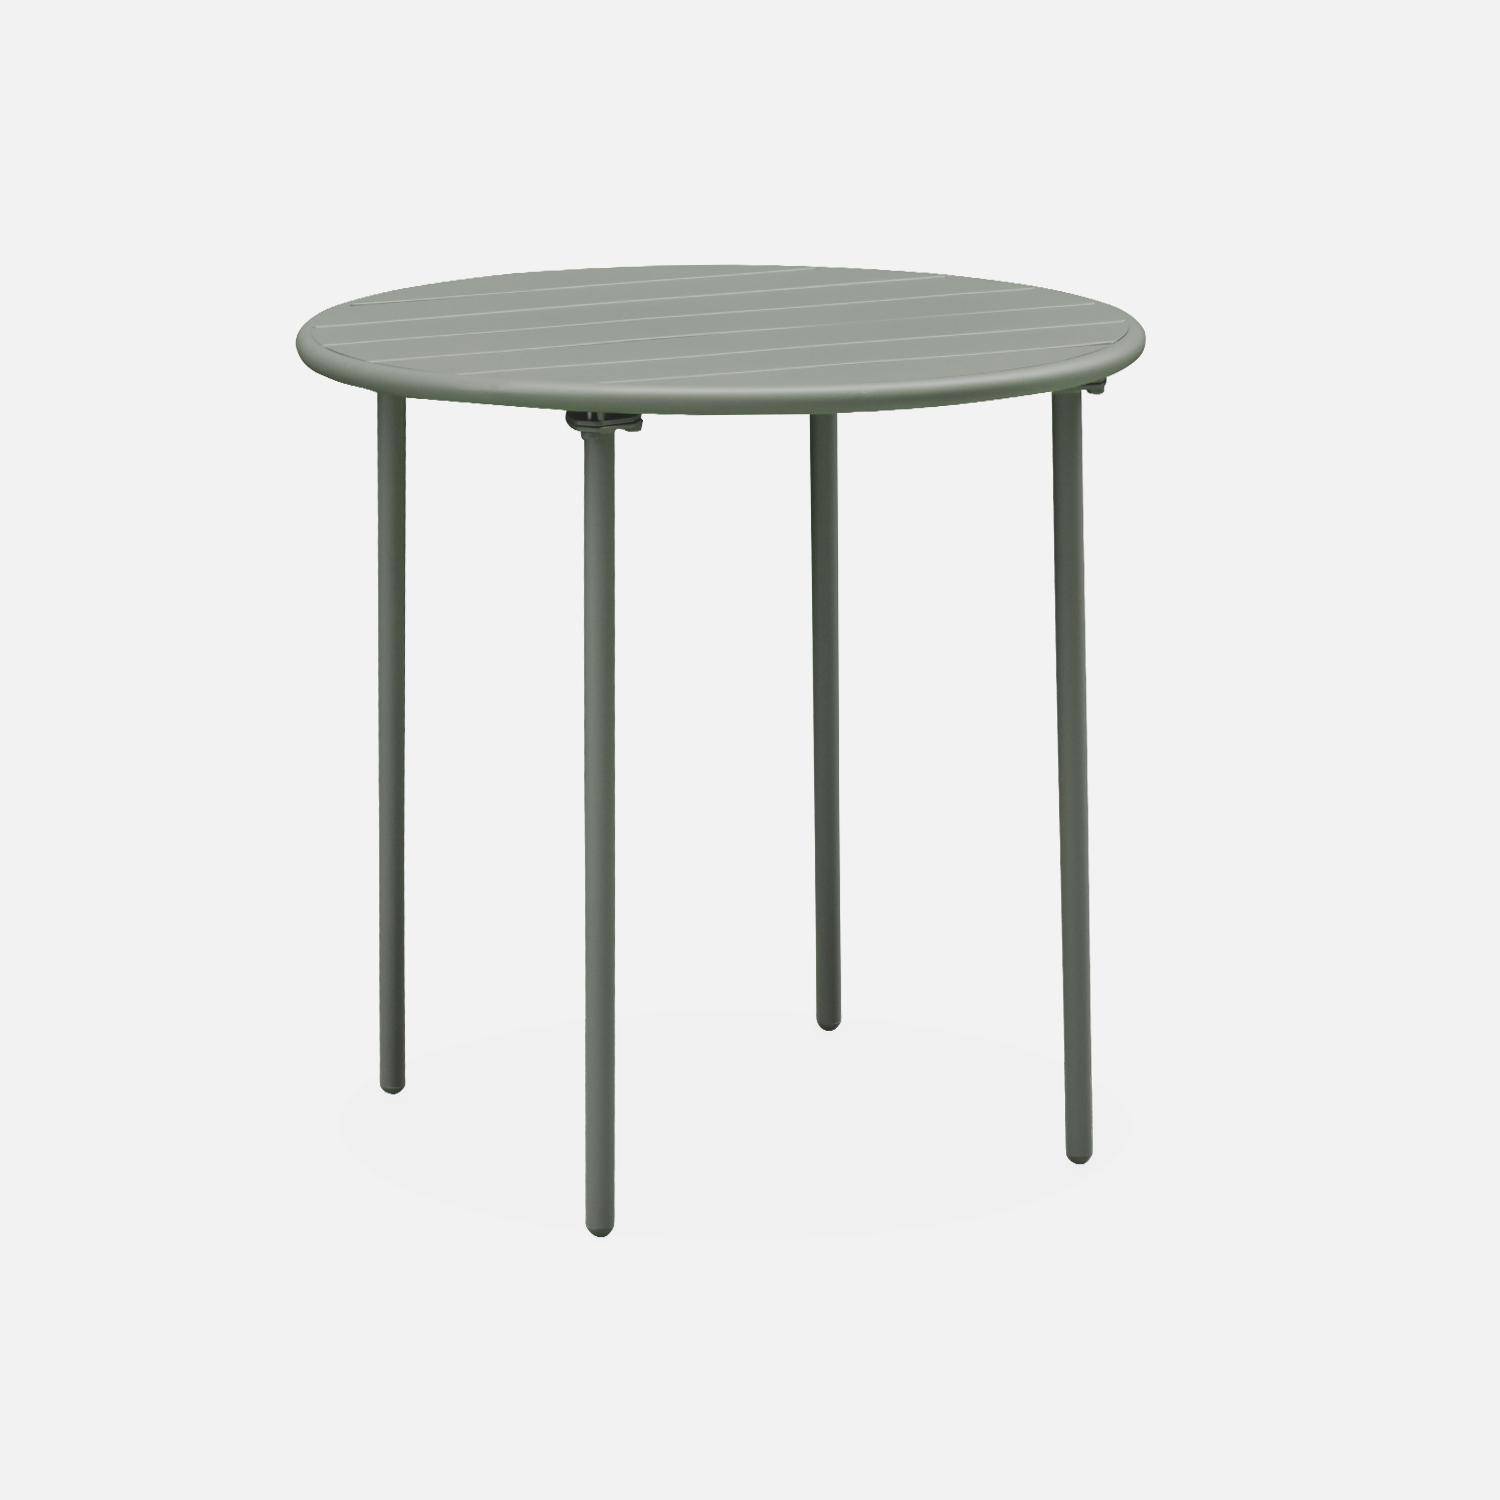 2-seater round steel garden table, Ø75cm - Amelia - Khaki Green,sweeek,Photo3